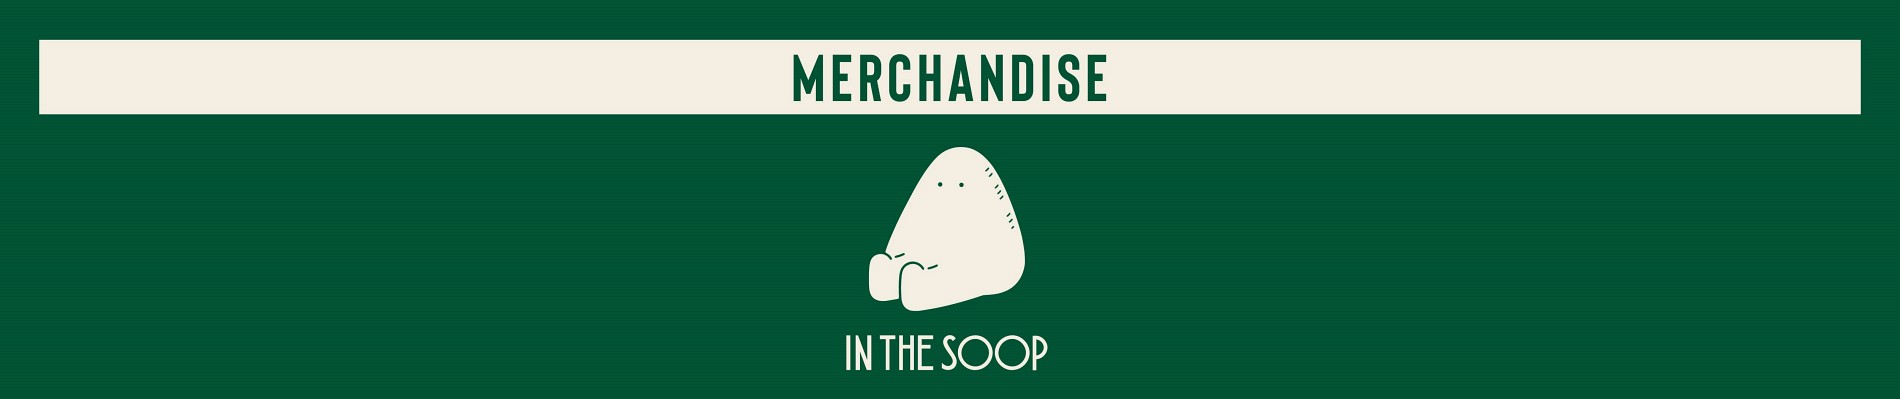 IN THE SOOP Official Merchandise